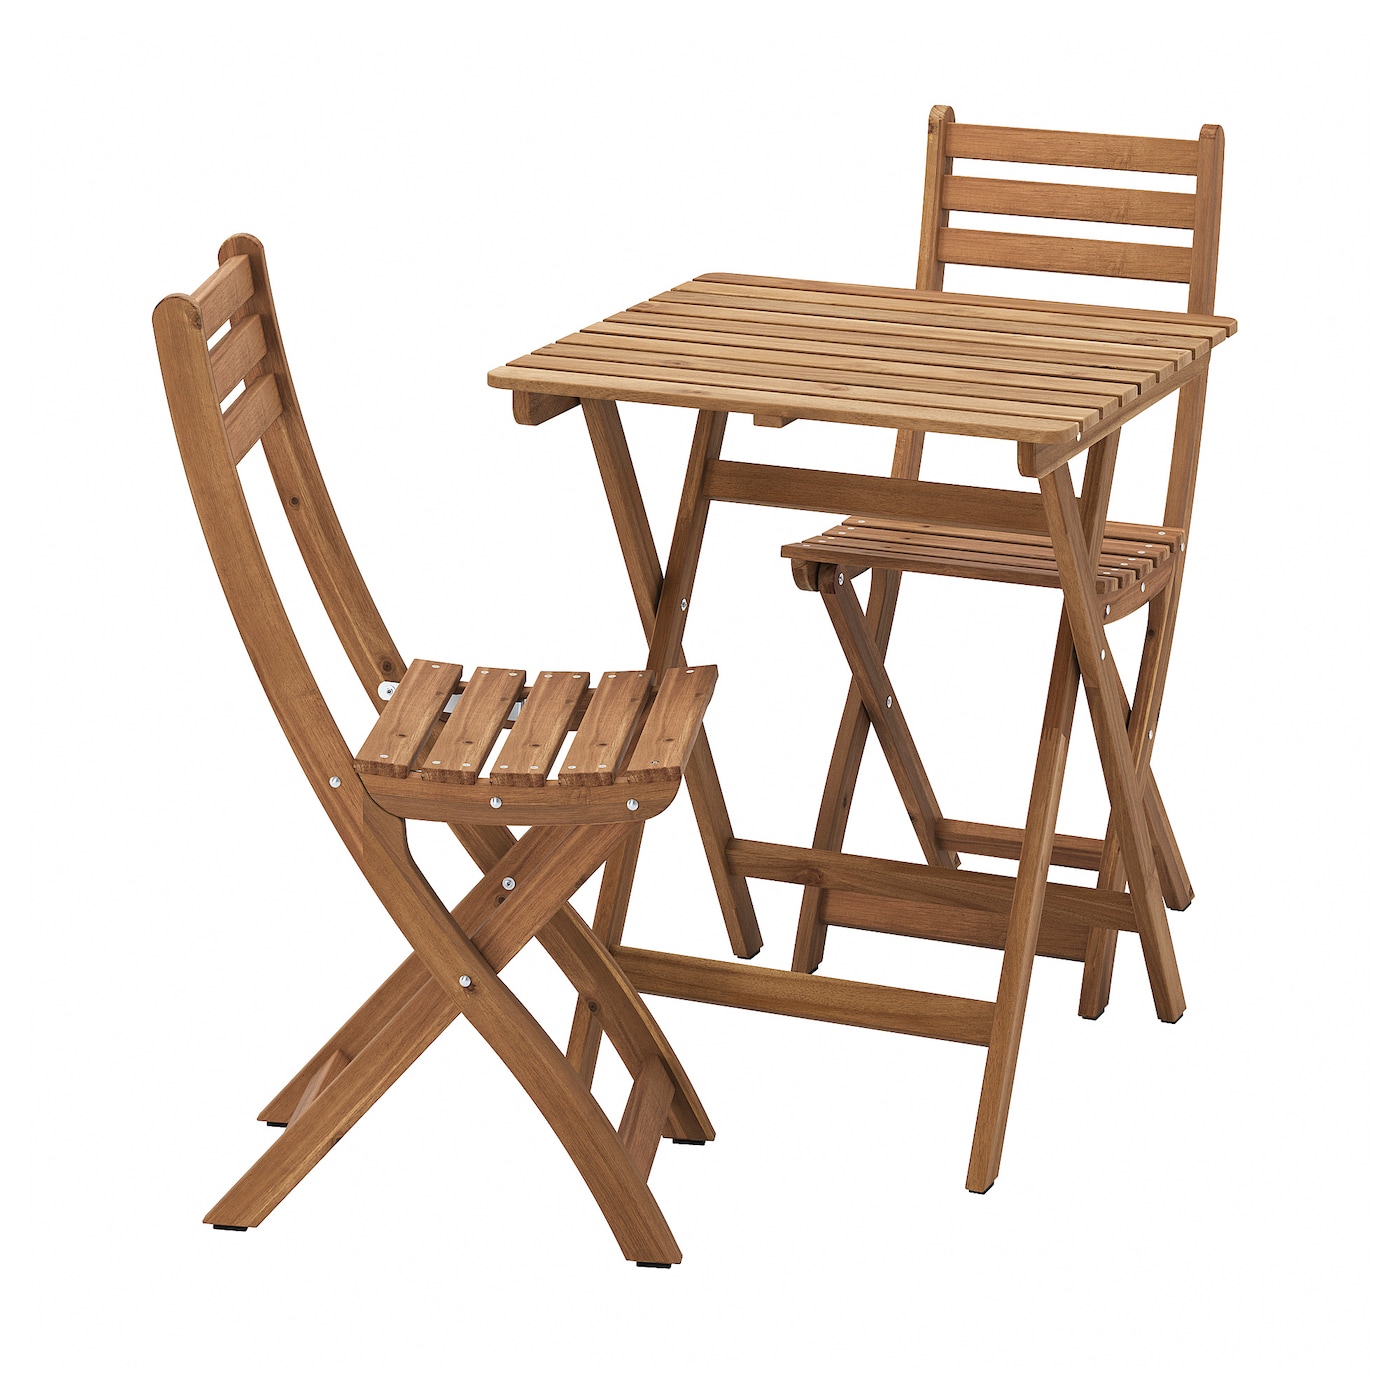 Садовый стол и 2 складных стула - ASKHOLMEN IKEA/ АСКХОЛЬМЕН ИКЕА,  62х60 см, коричневый